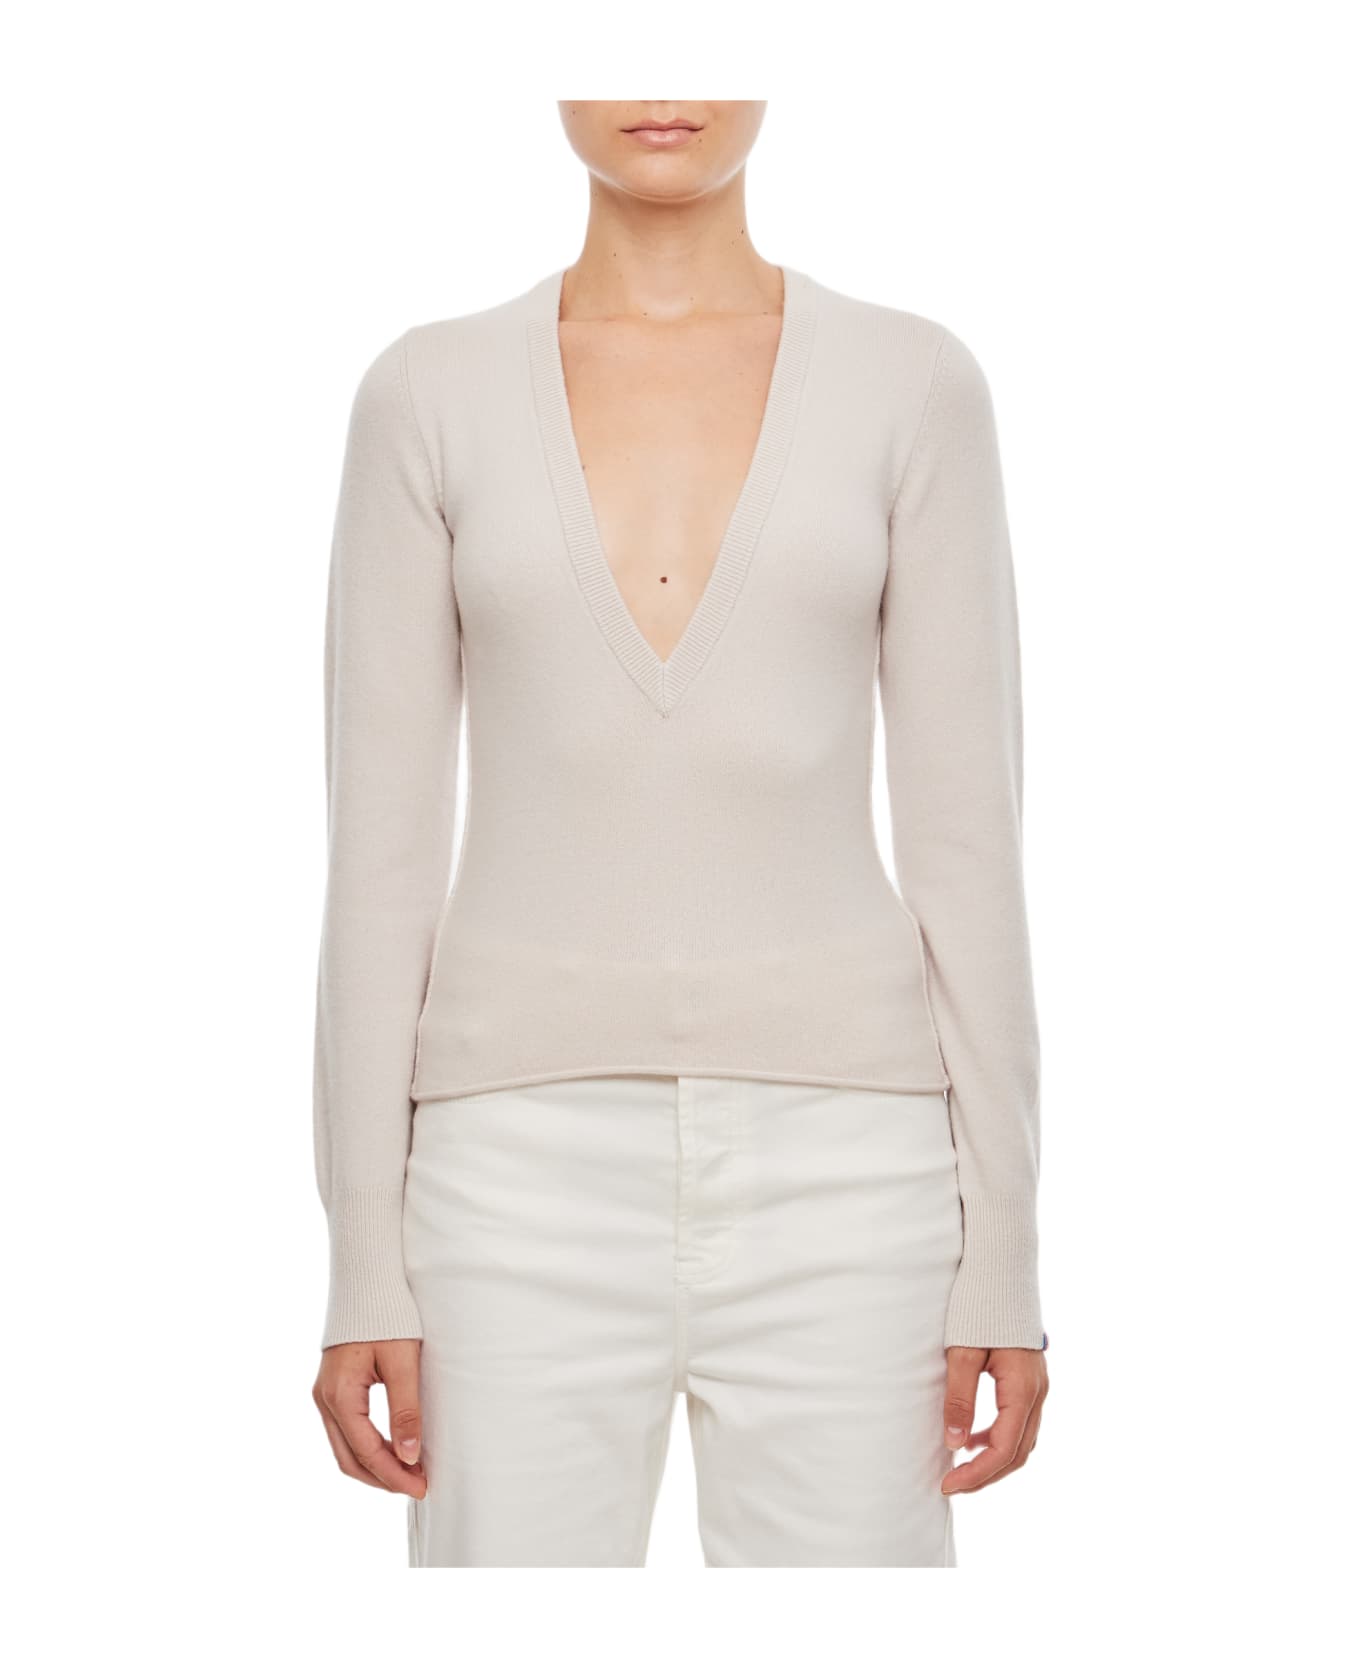 Extreme Cashmere Deco Cashmere Sweater - White